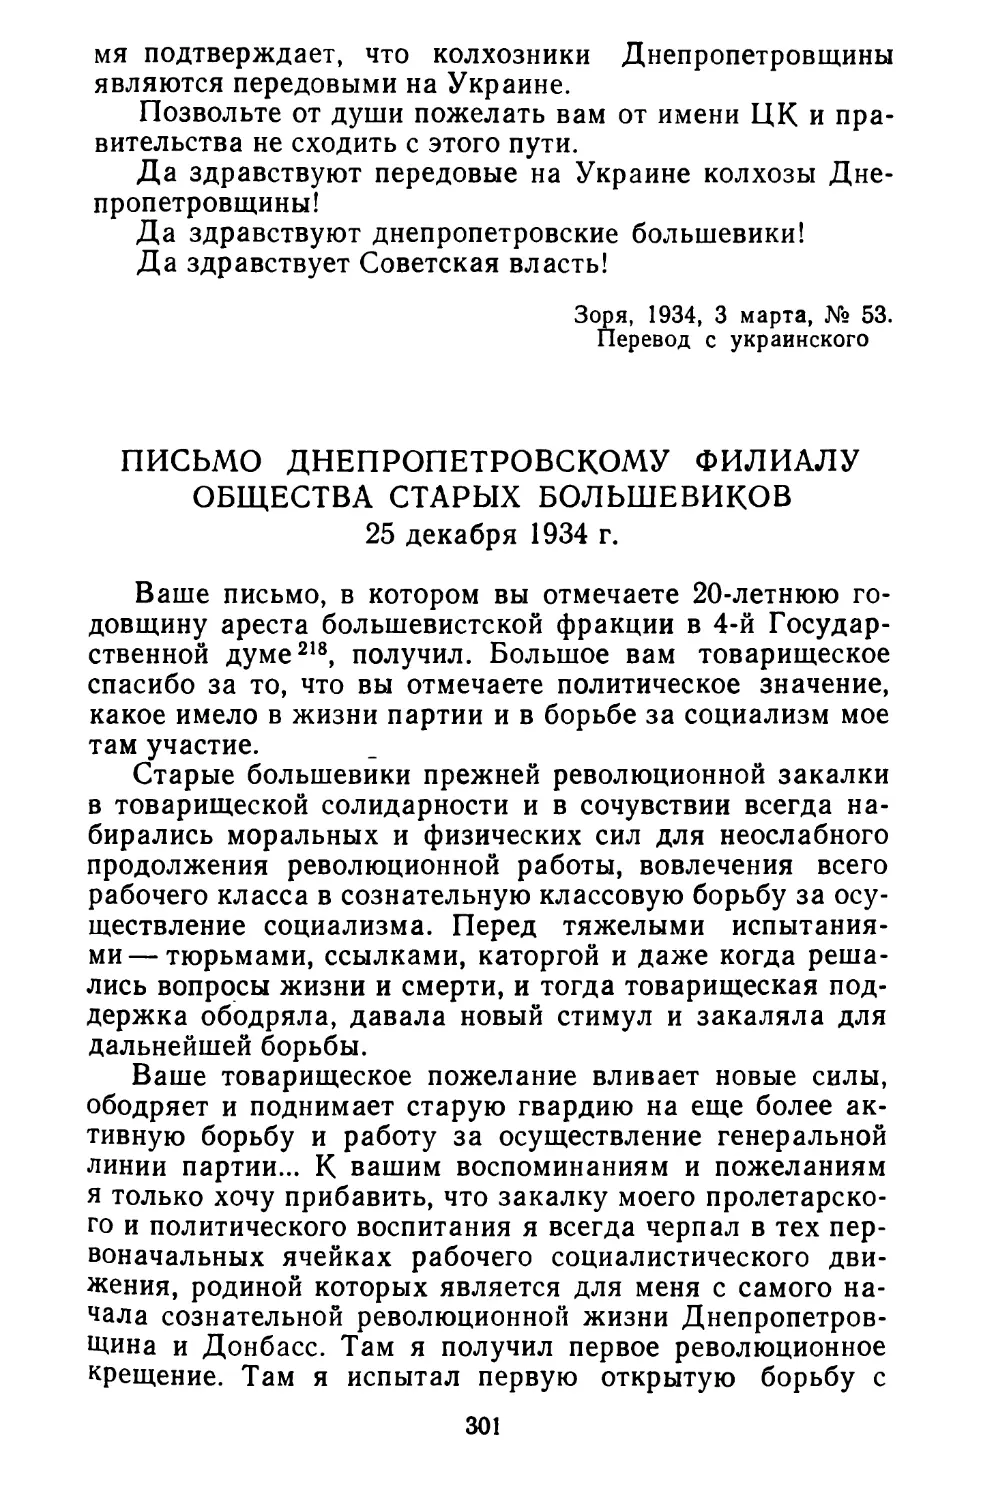 Письмо Днепропетровскому филиалу общества старых большевиков. 25 декабря 1934 г.